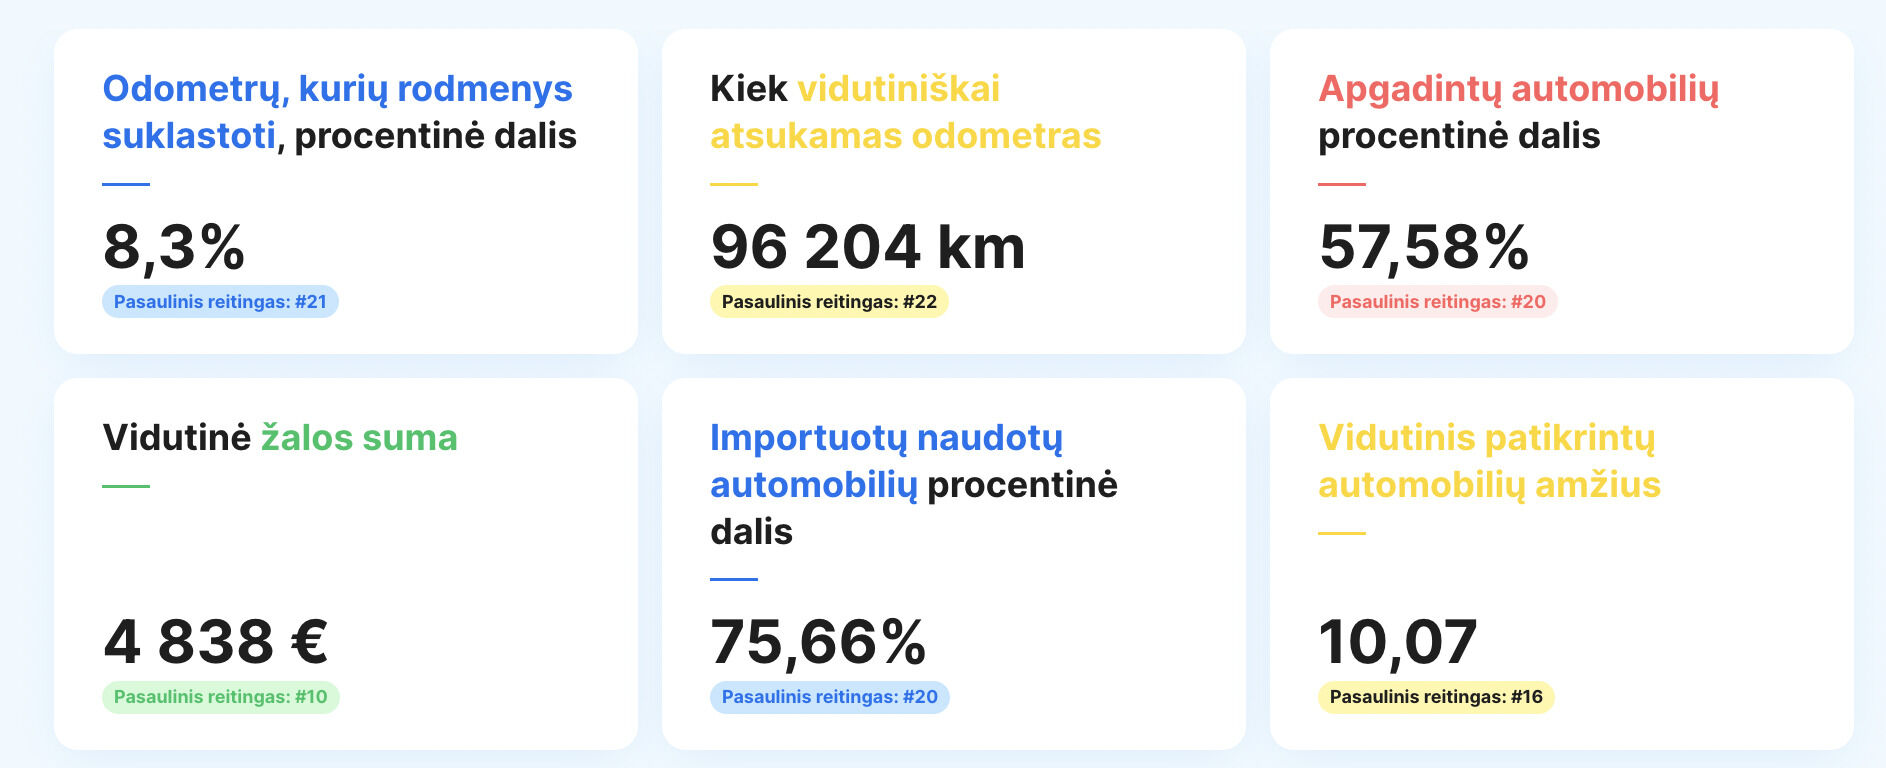 Europos naudotų automobilių rinkos skaidrumo tyrime Lietuva liko sąrašo apačioje foto 1